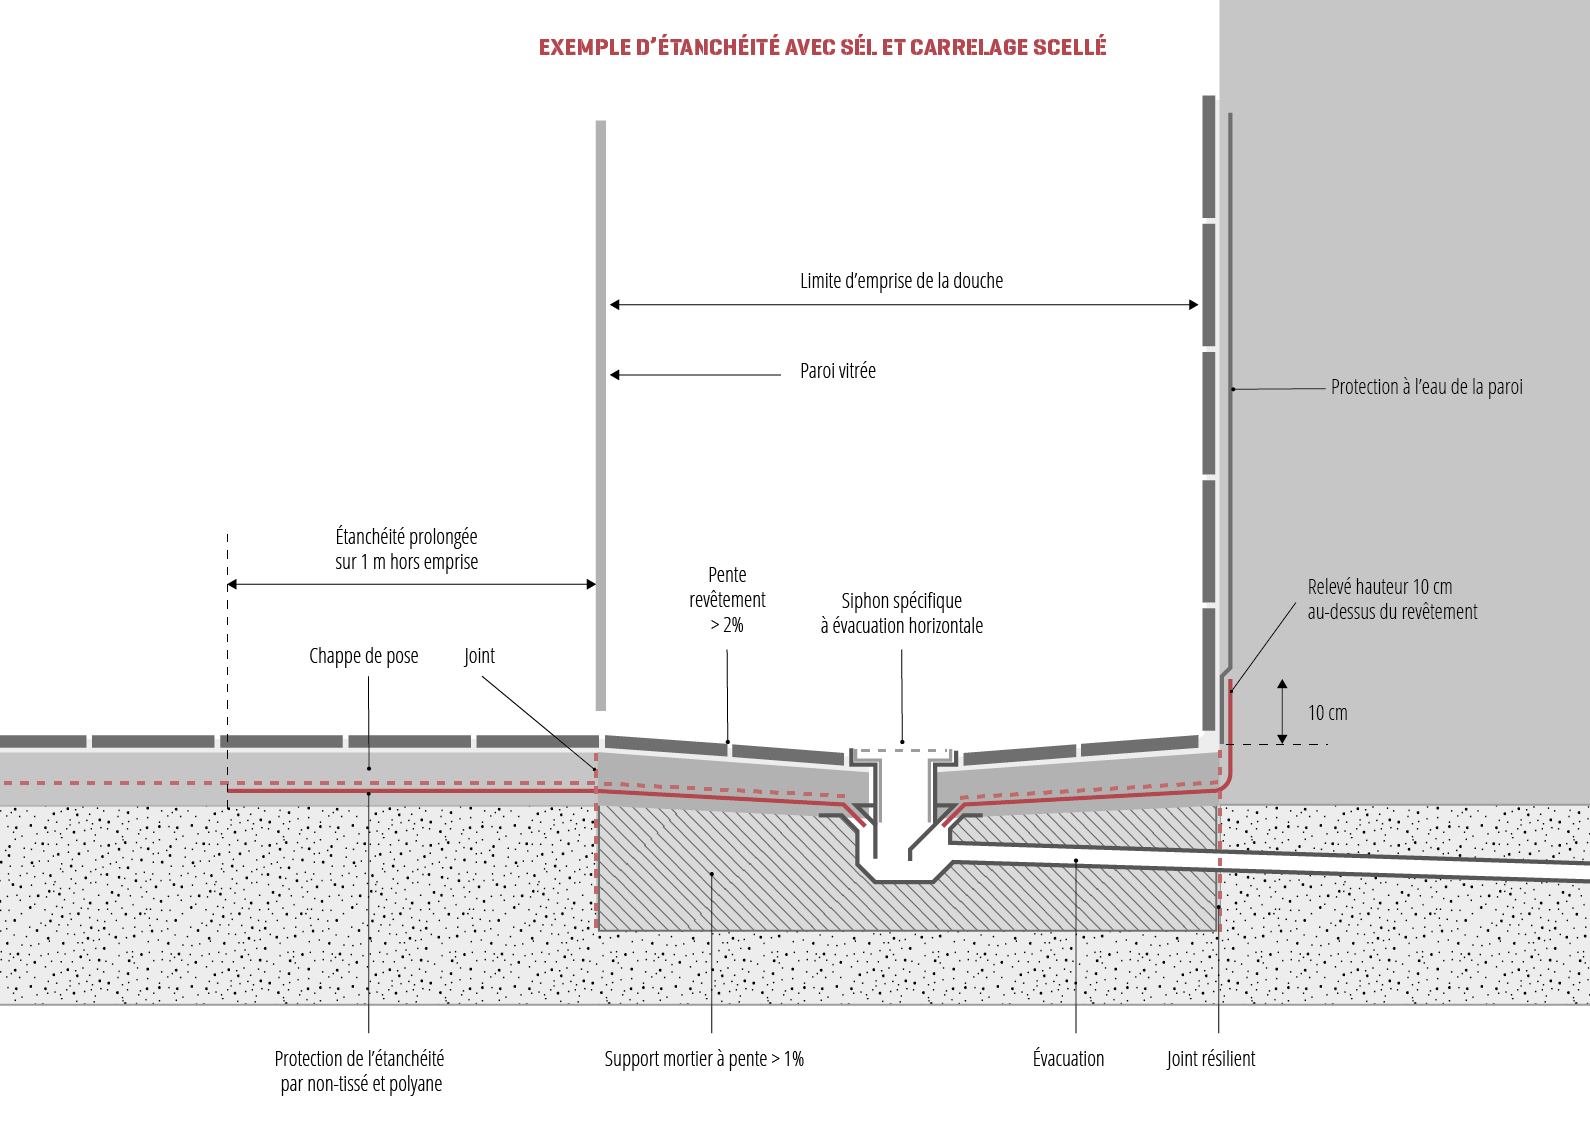 Schéma d'un exemple d'étanchéité avec SEL et carrelage scellé d'une douche à l'italienne